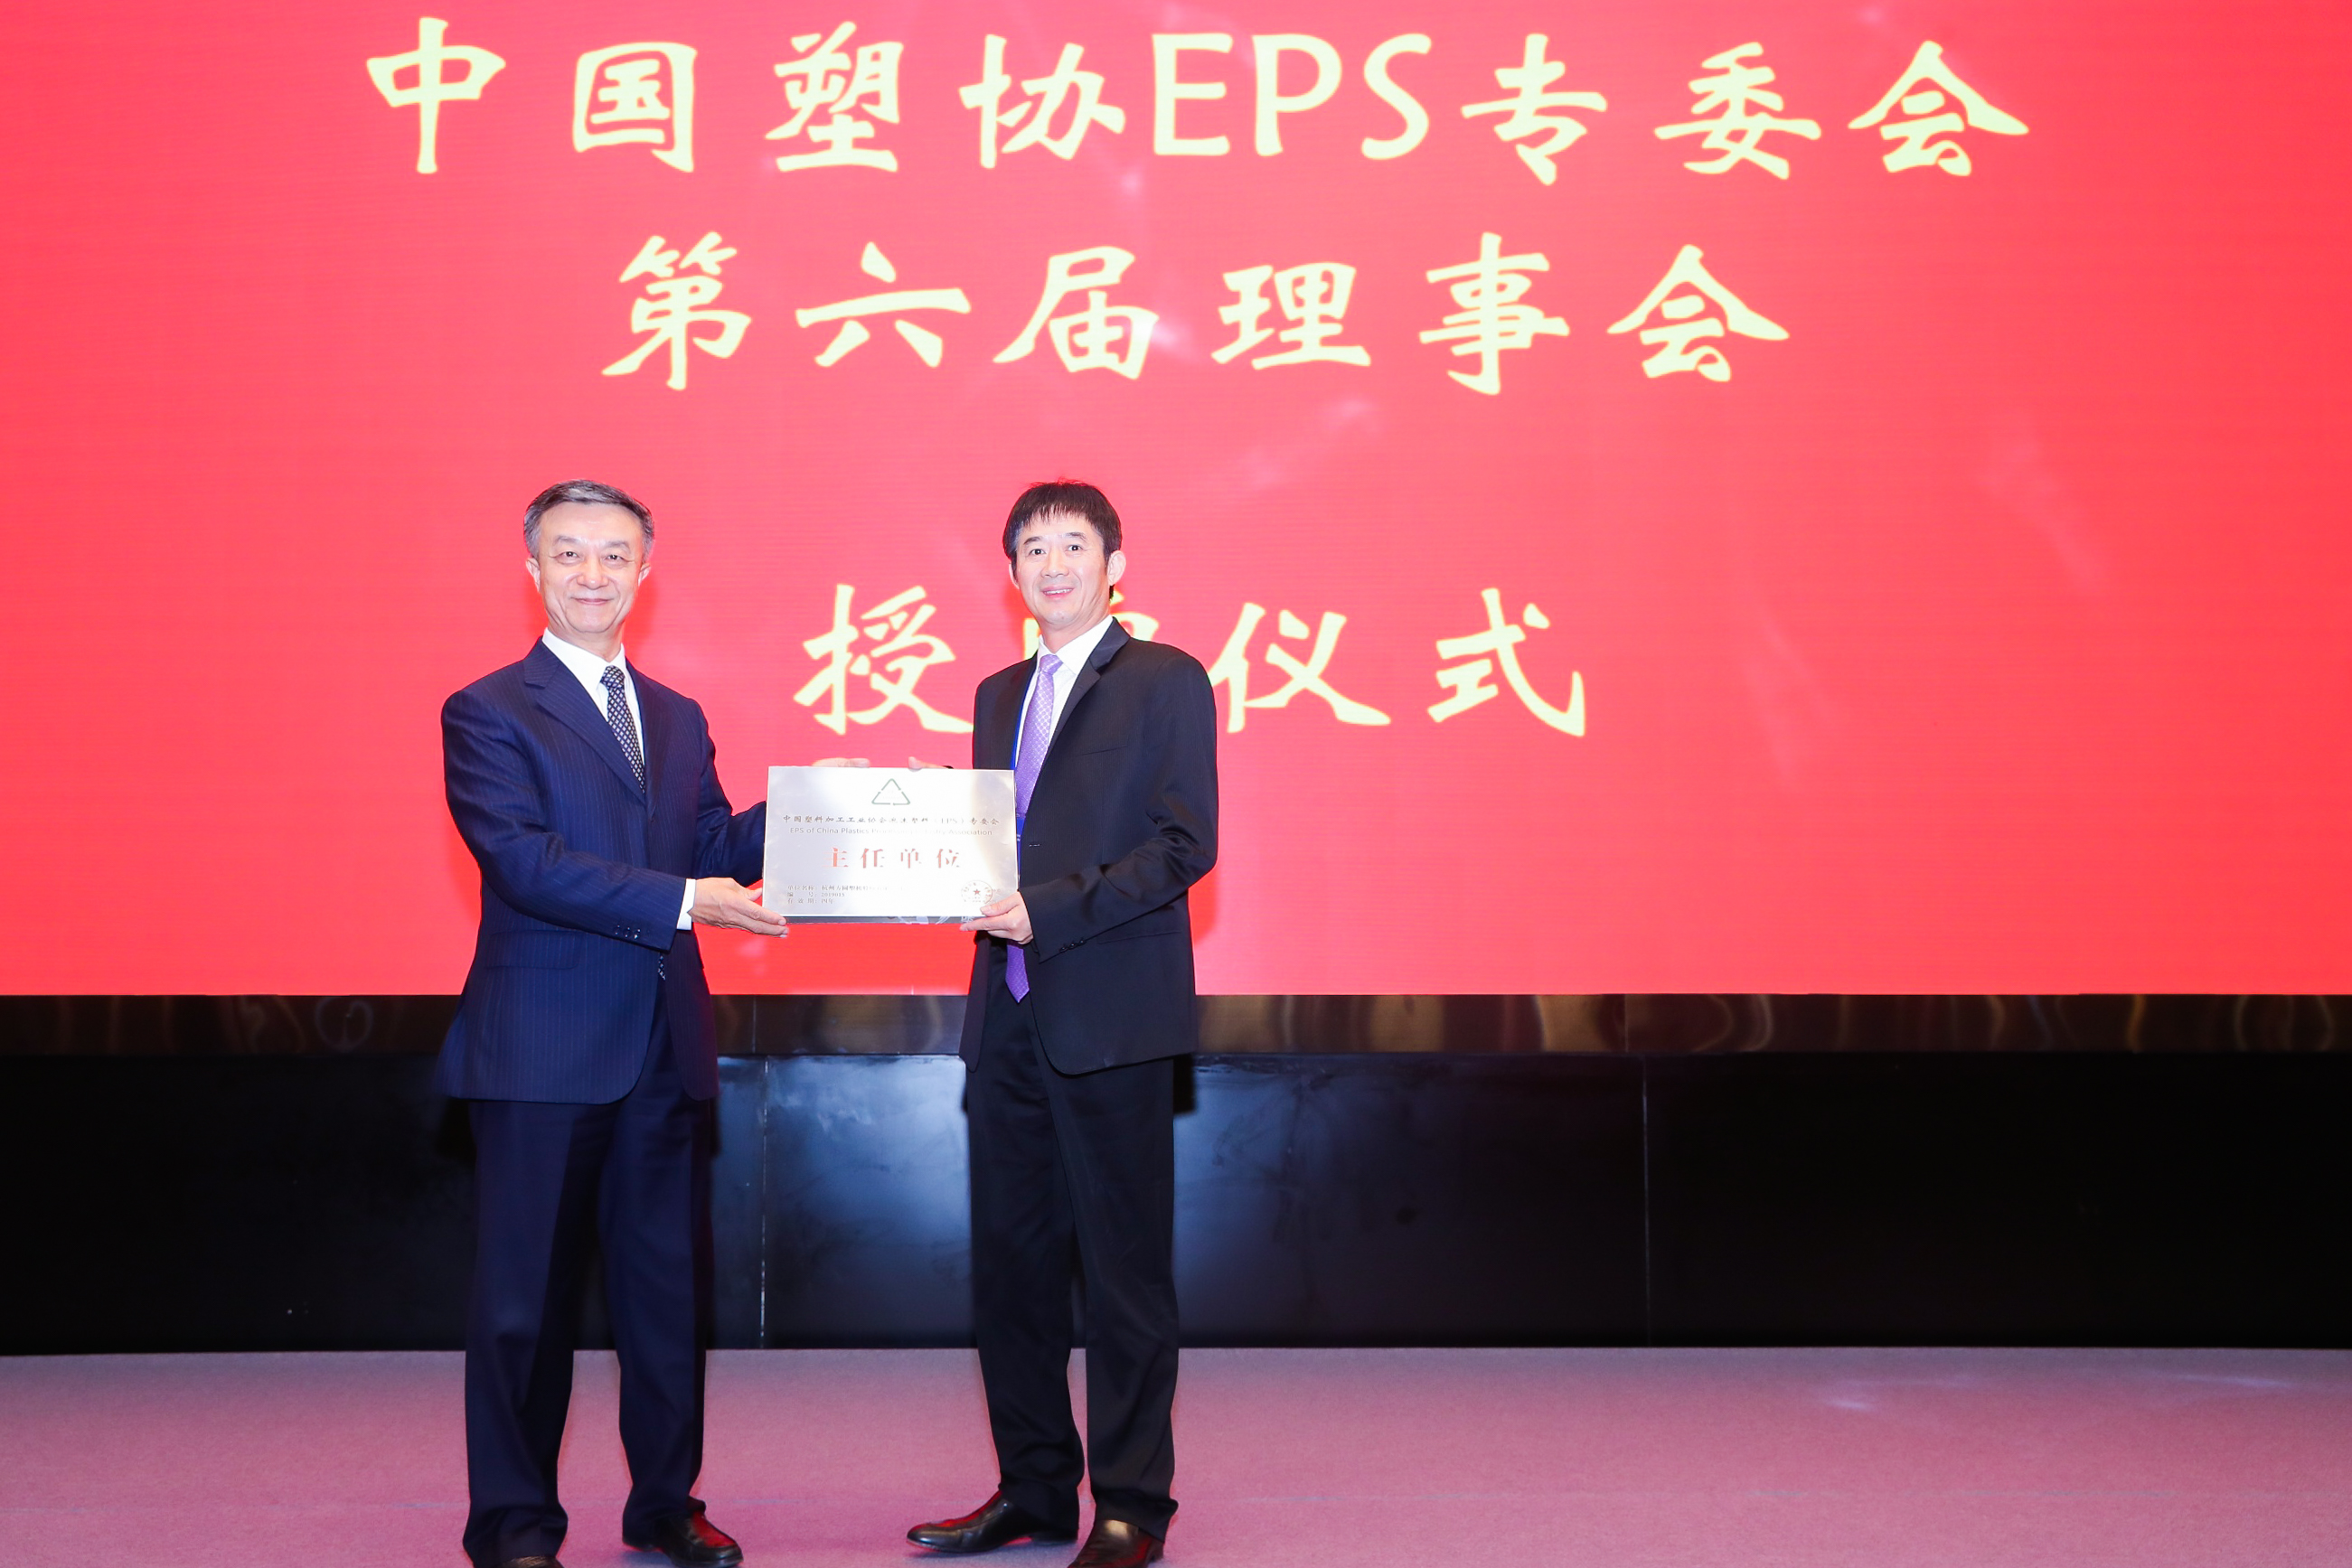 方圆公司所有者袁国庆先生自2019年起被授予中国塑料加工业协会EPS委员会主席。